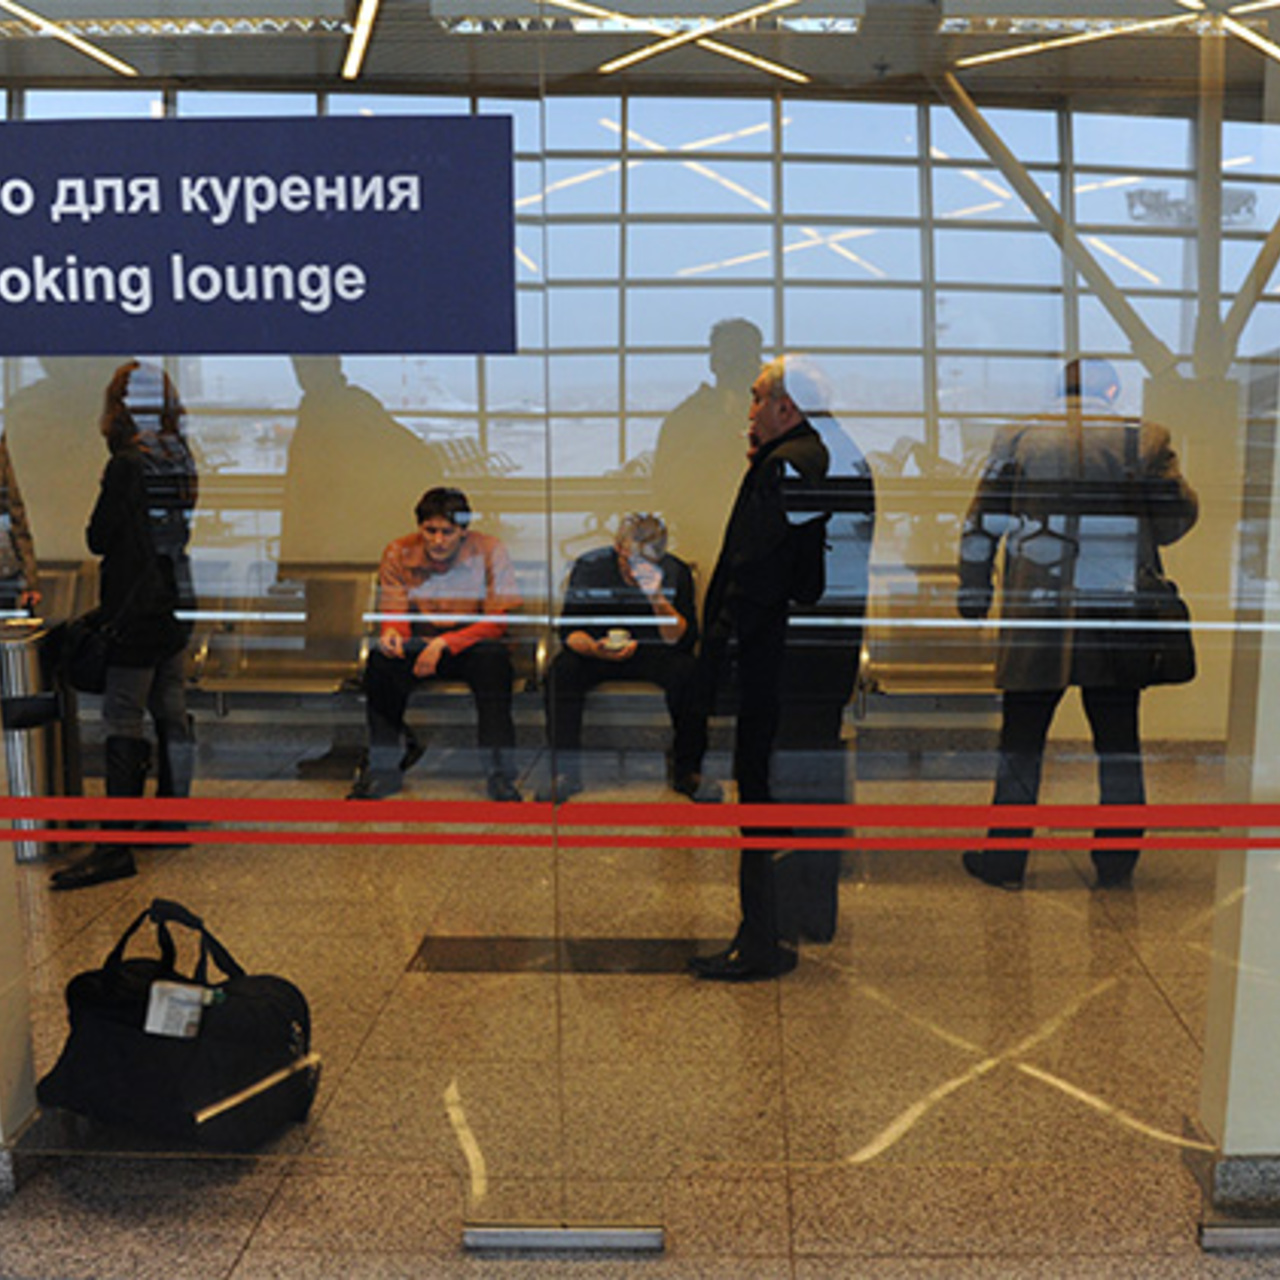 Можно ли в аэропорт сигареты. Зона курения в аэропорту Сочи. Место для курения. Курилка в аэропорту Сочи. Курительная комната в аэропорту Сочи.